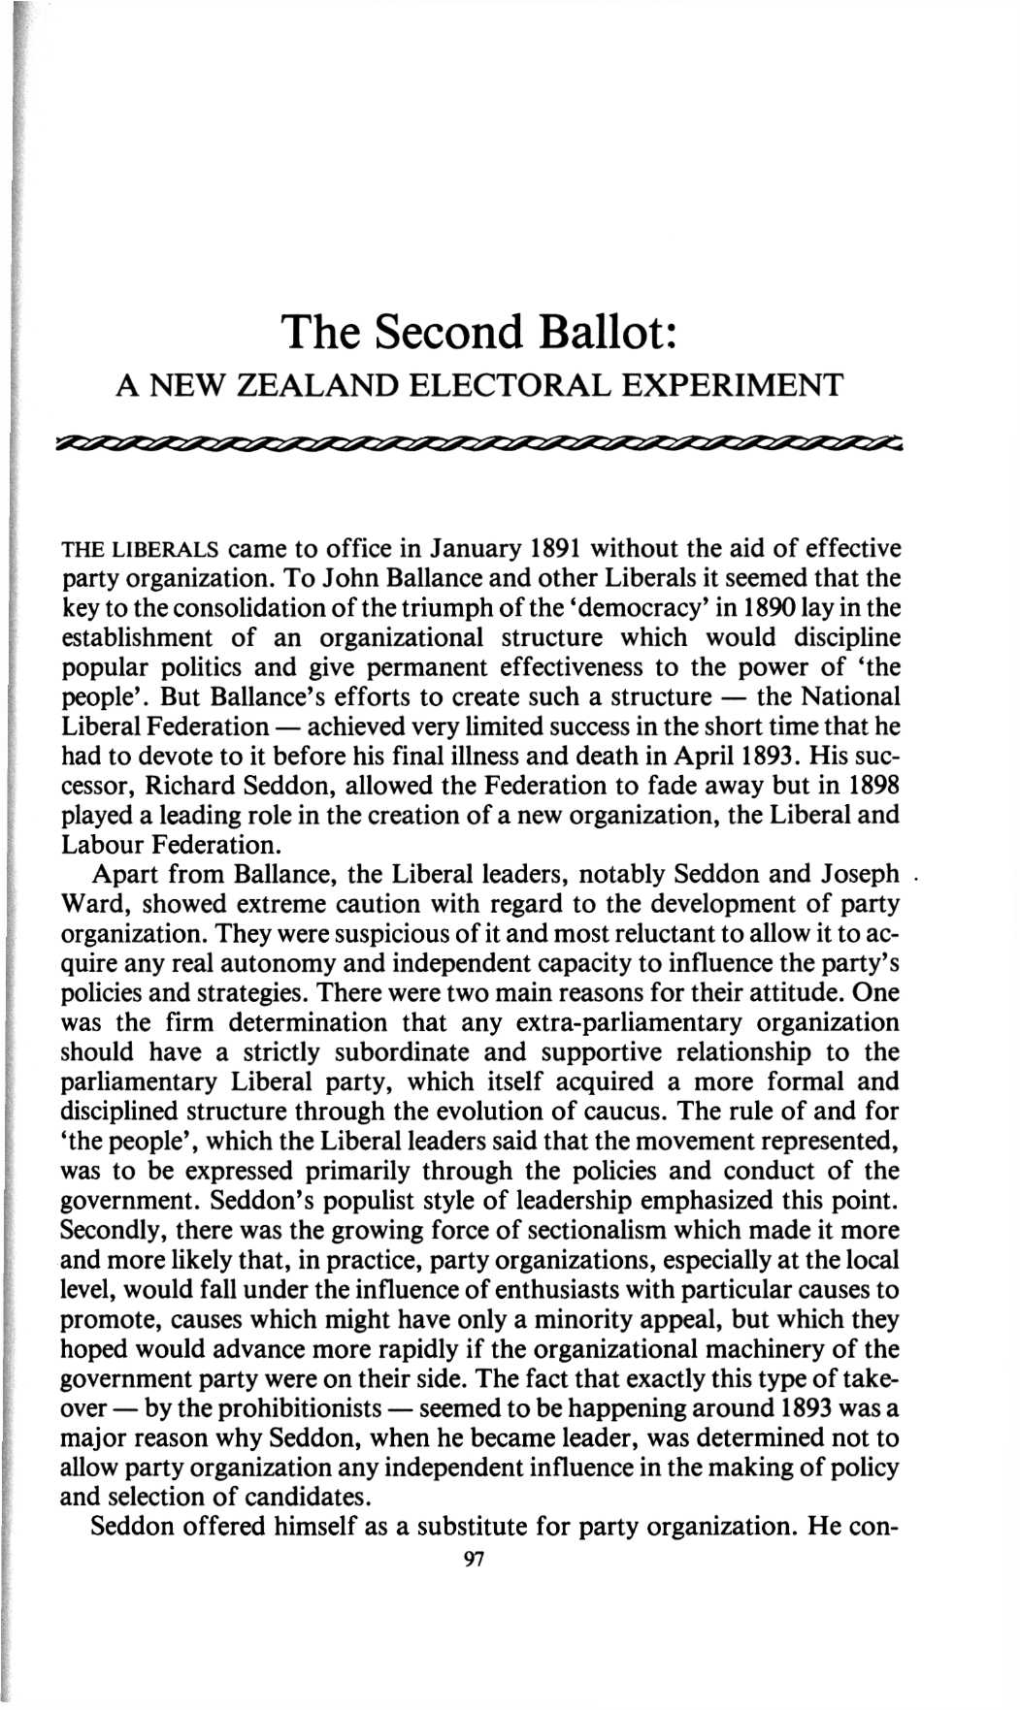 The Second Ballot: a NEW ZEALAND ELECTORAL EXPERIMENT